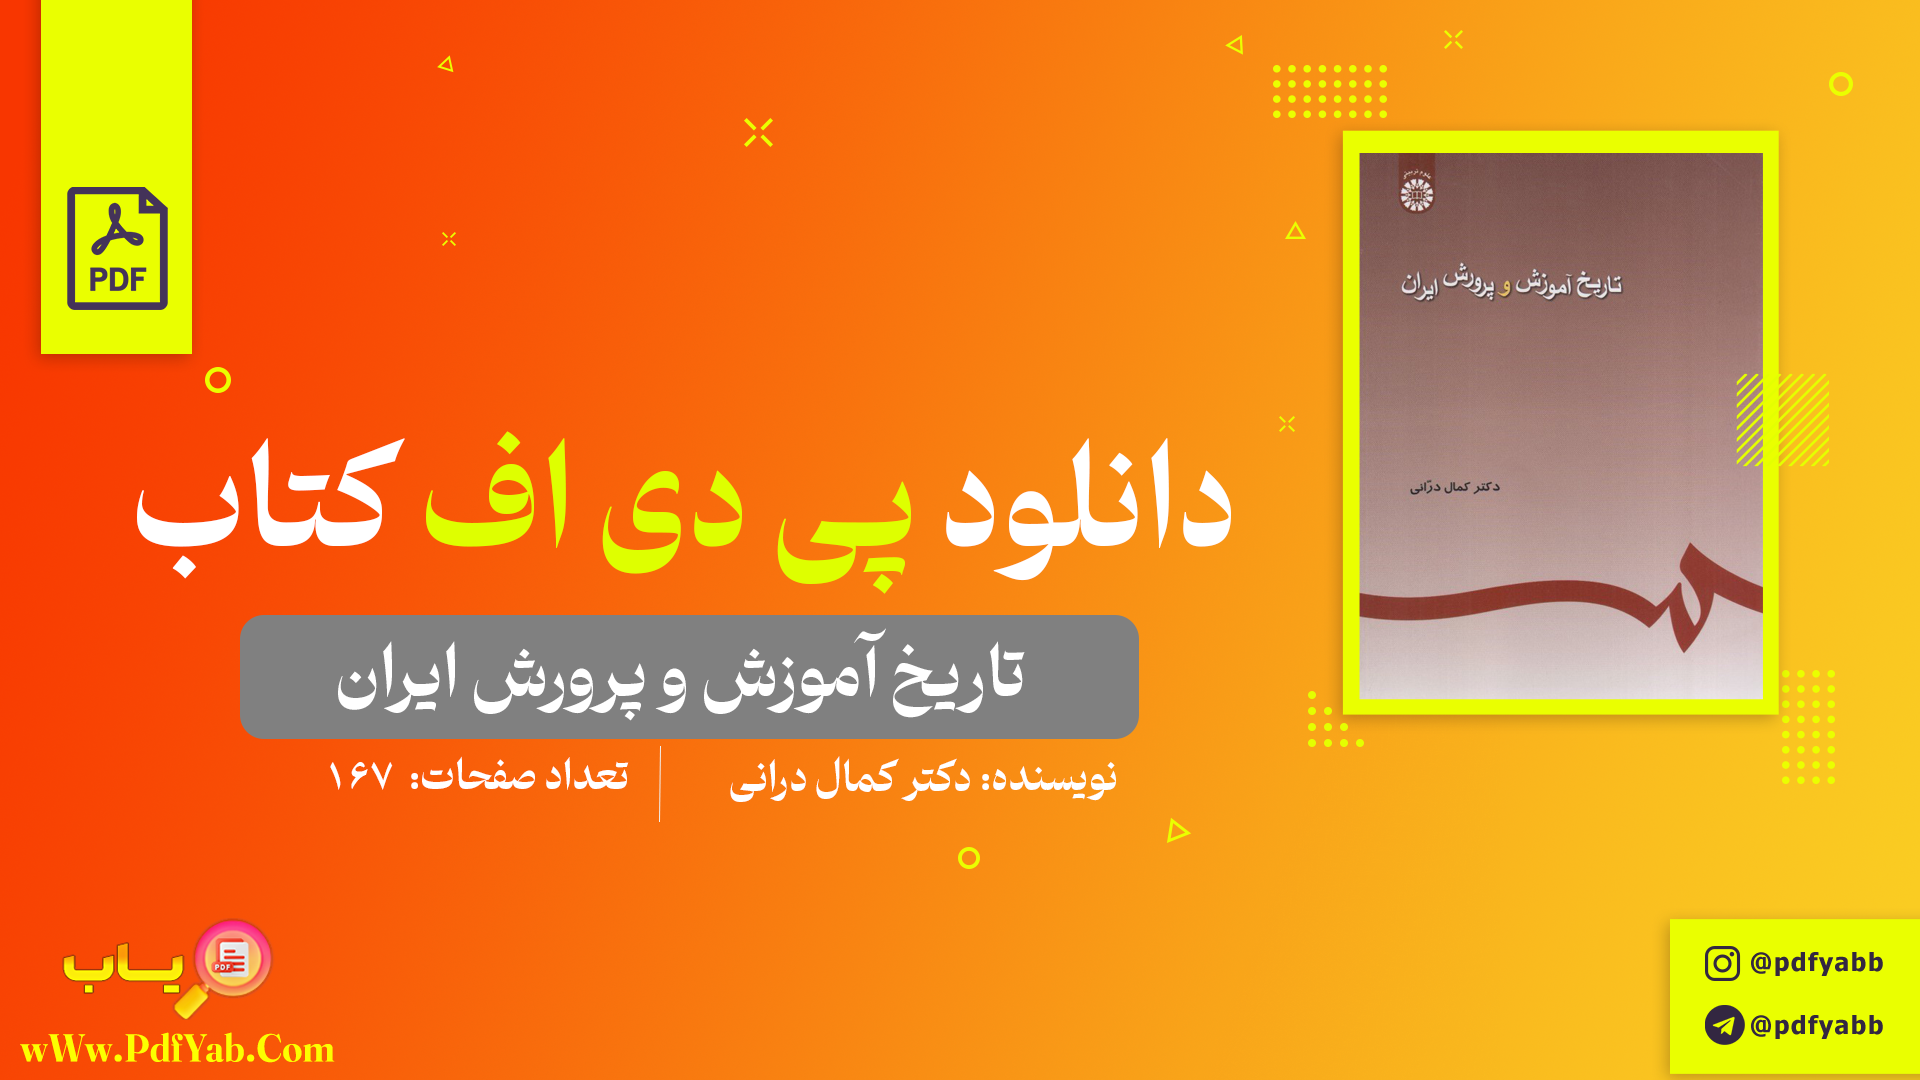 کتاب تاریخ آموزش پرورش ایران دکتر کمال درانی دانلود PDF